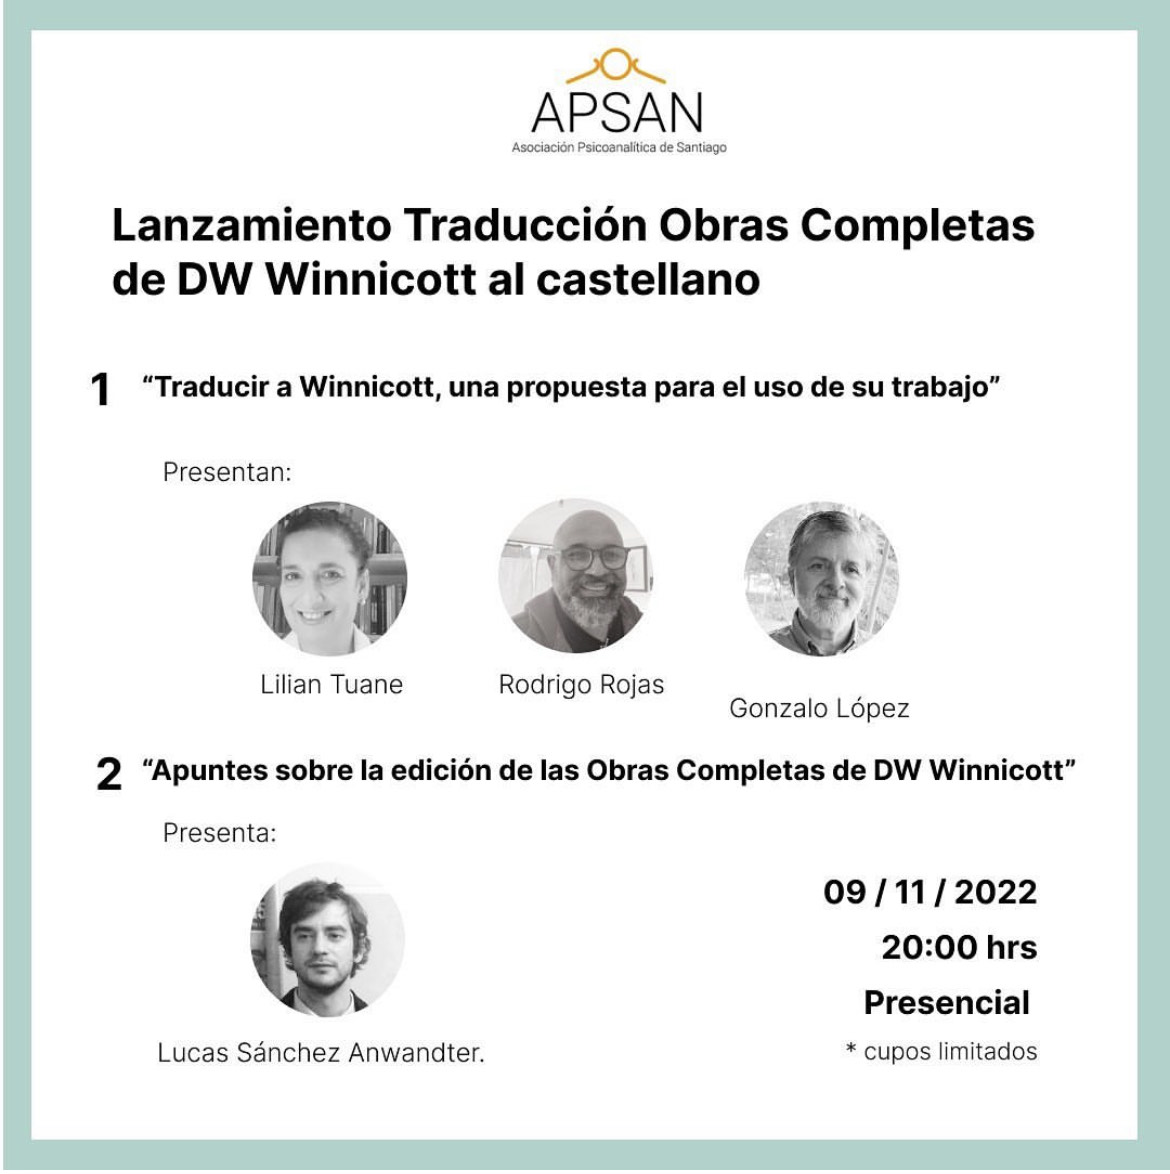 Lanzamiento Traducción de Obras completas de DW Winnicott al castellano en Apsan